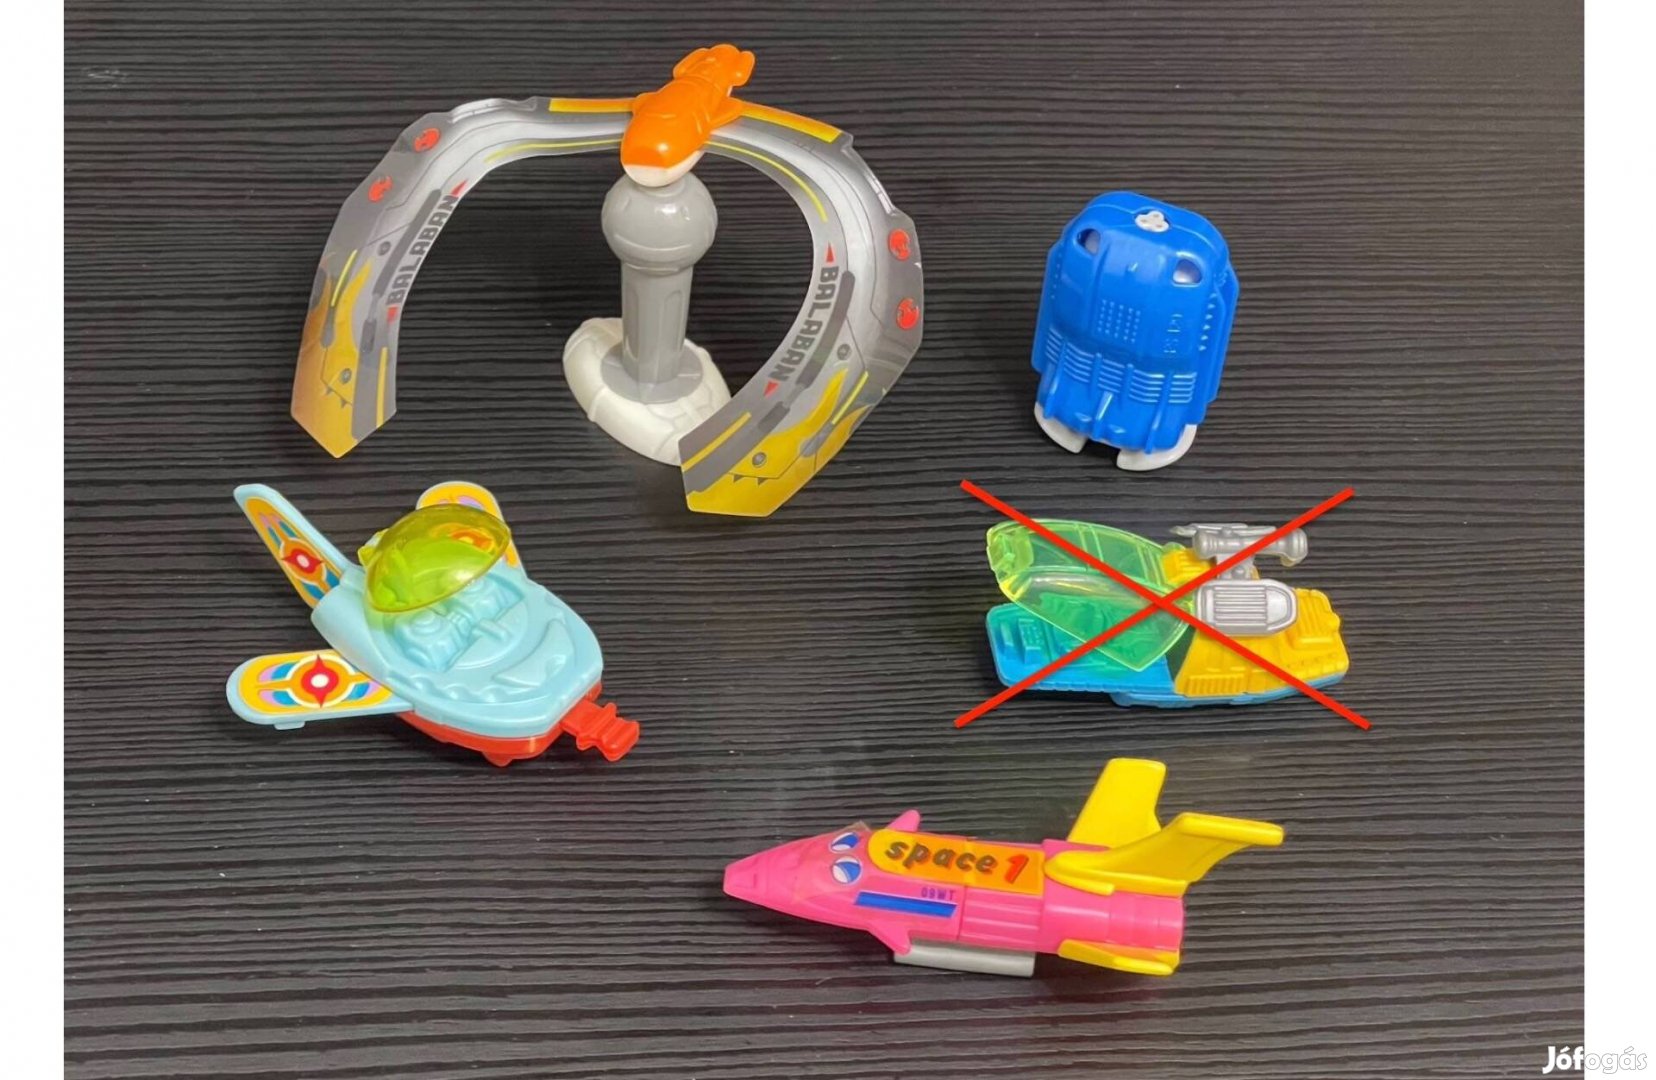 Kinder figurák: űrhajók és repülők